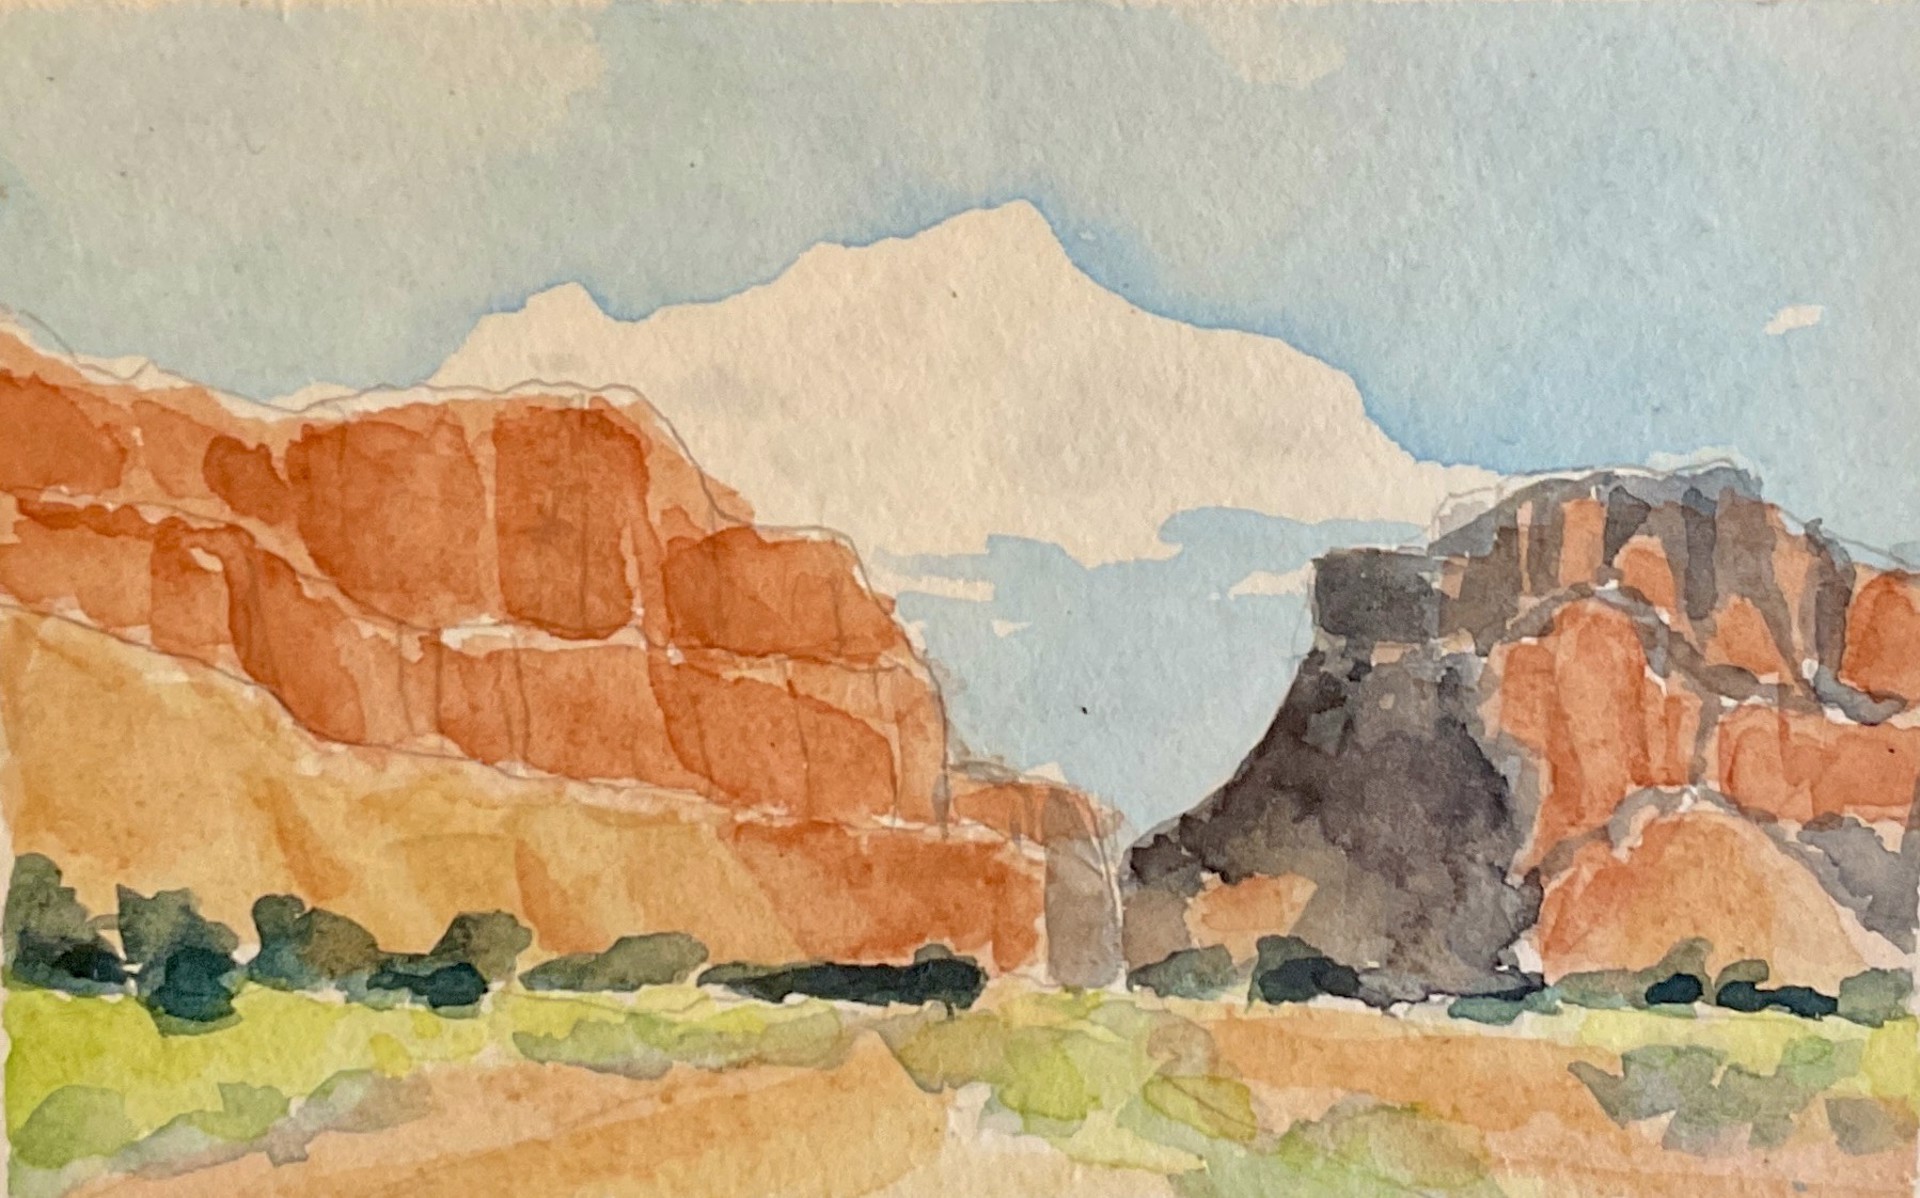 "Diablo Canyon" by Cynthia Inson